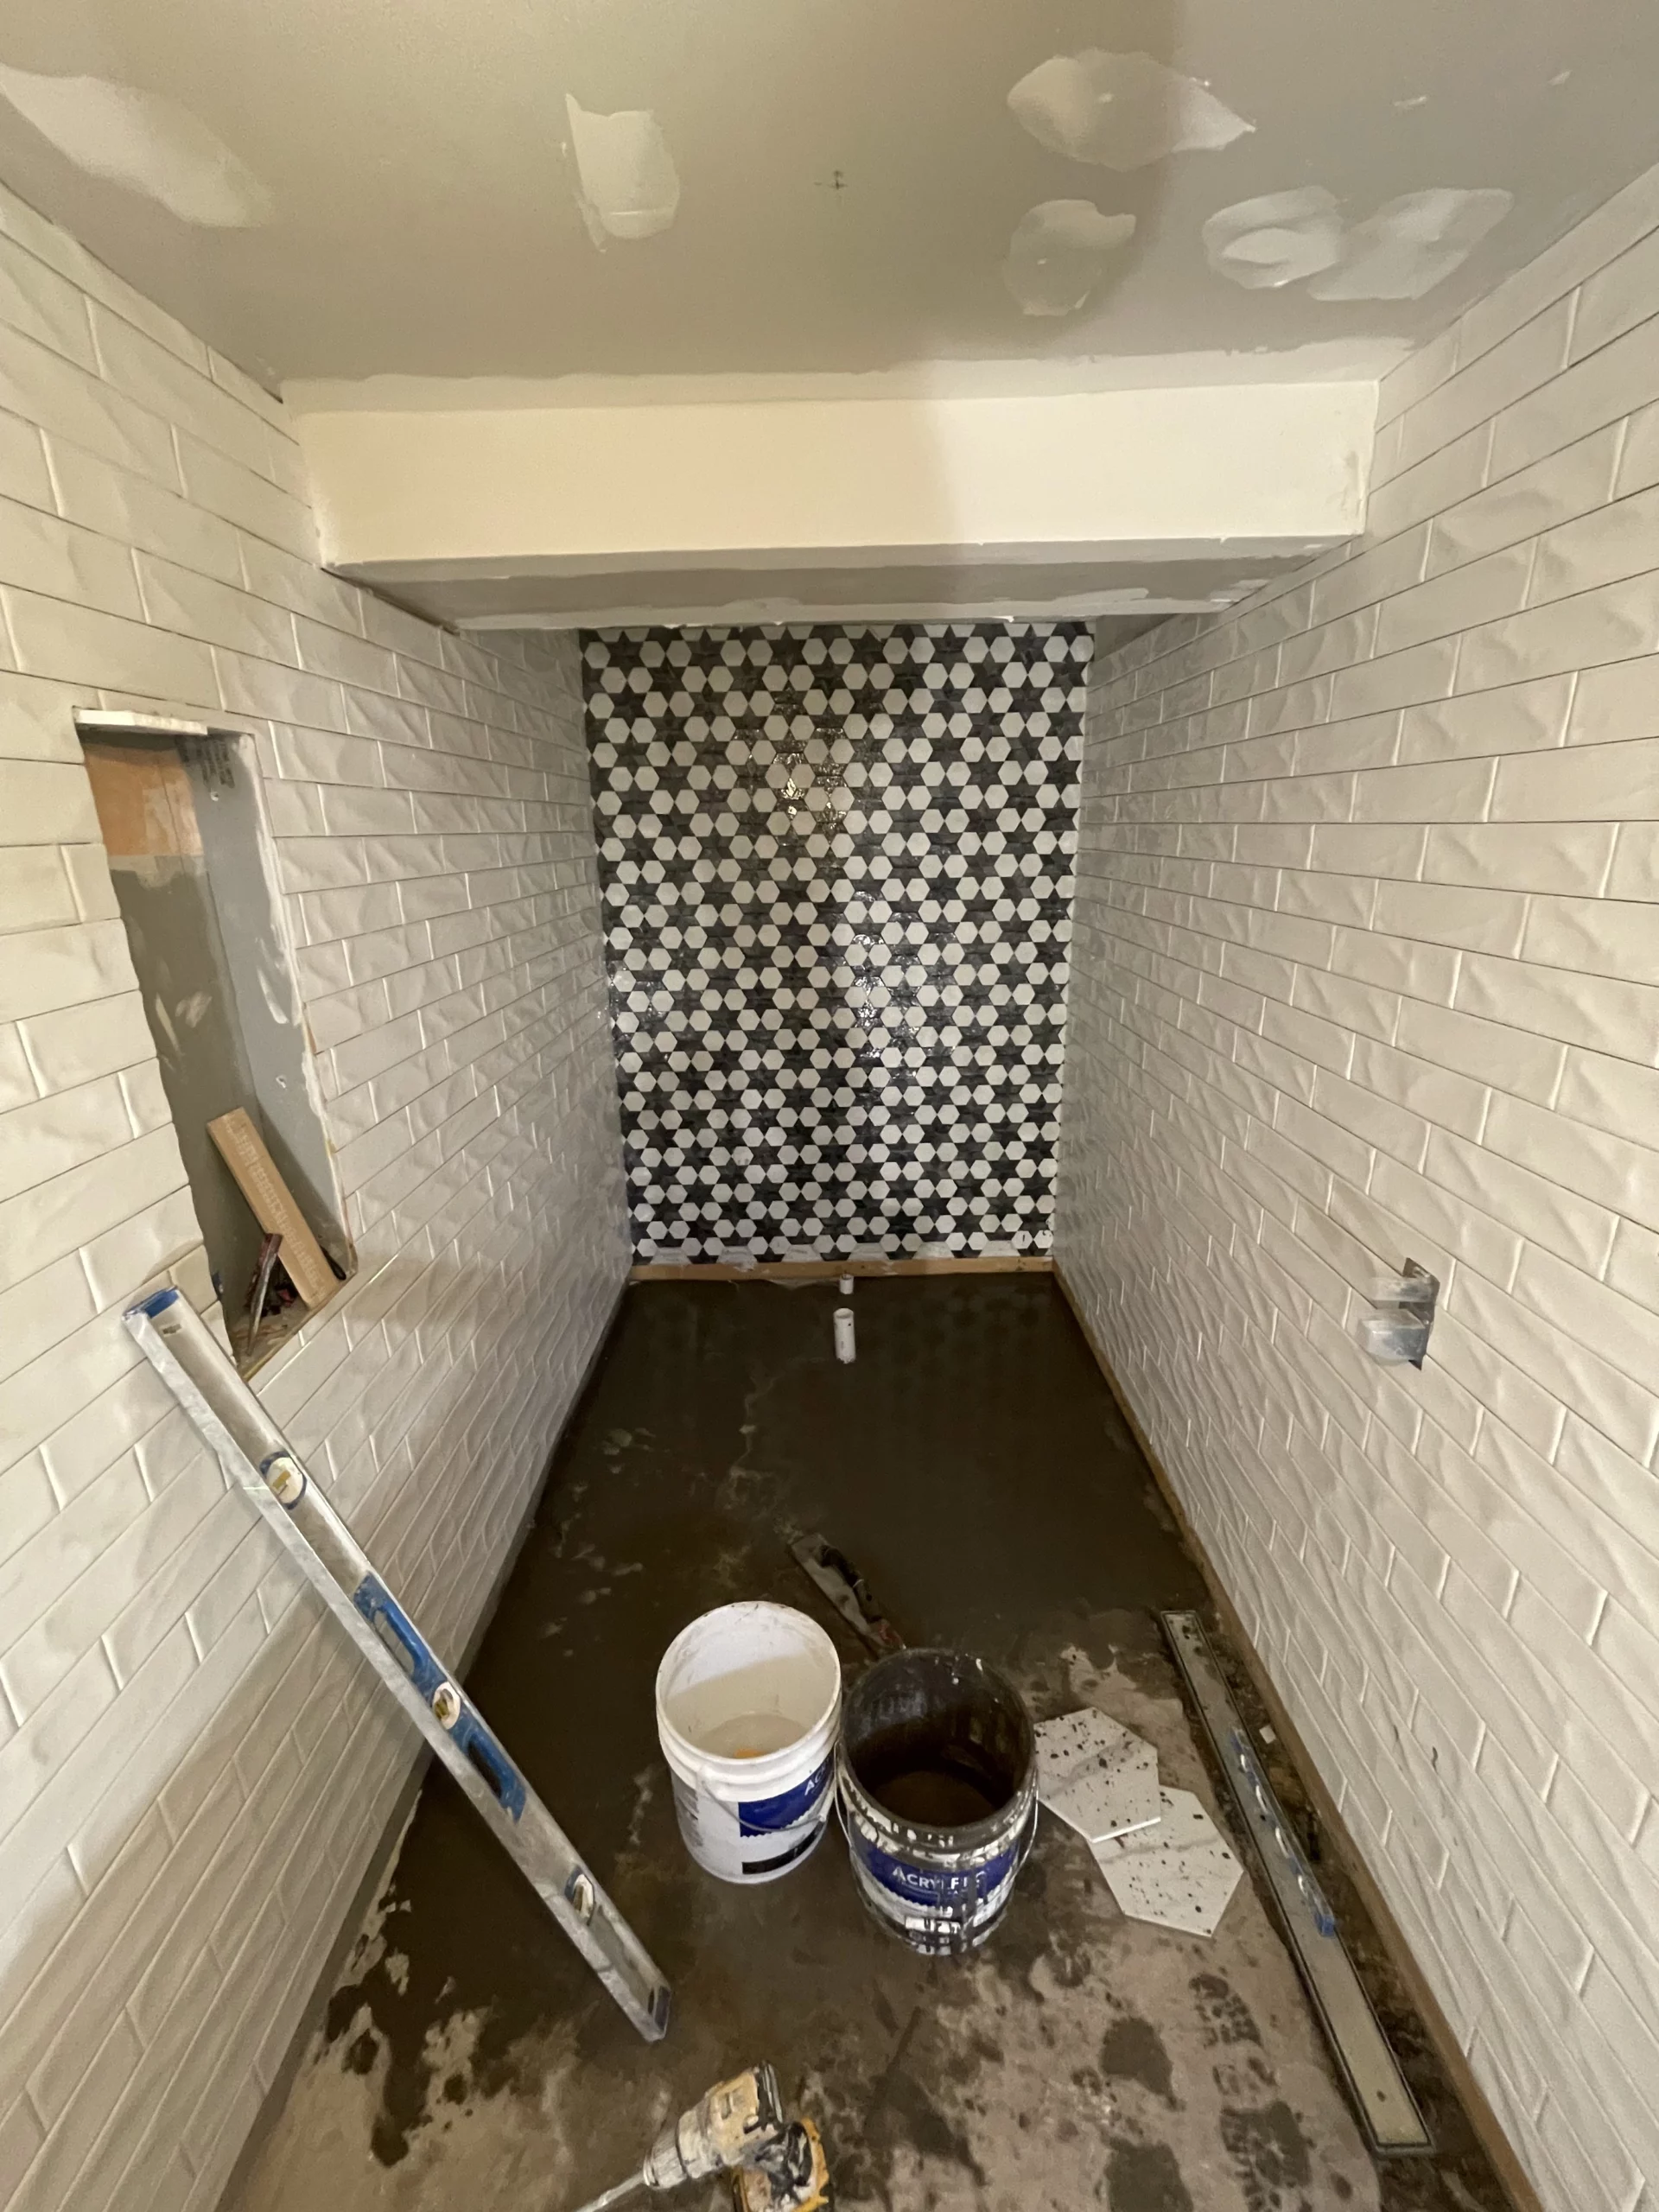 Tile installation in bathroom remodeling